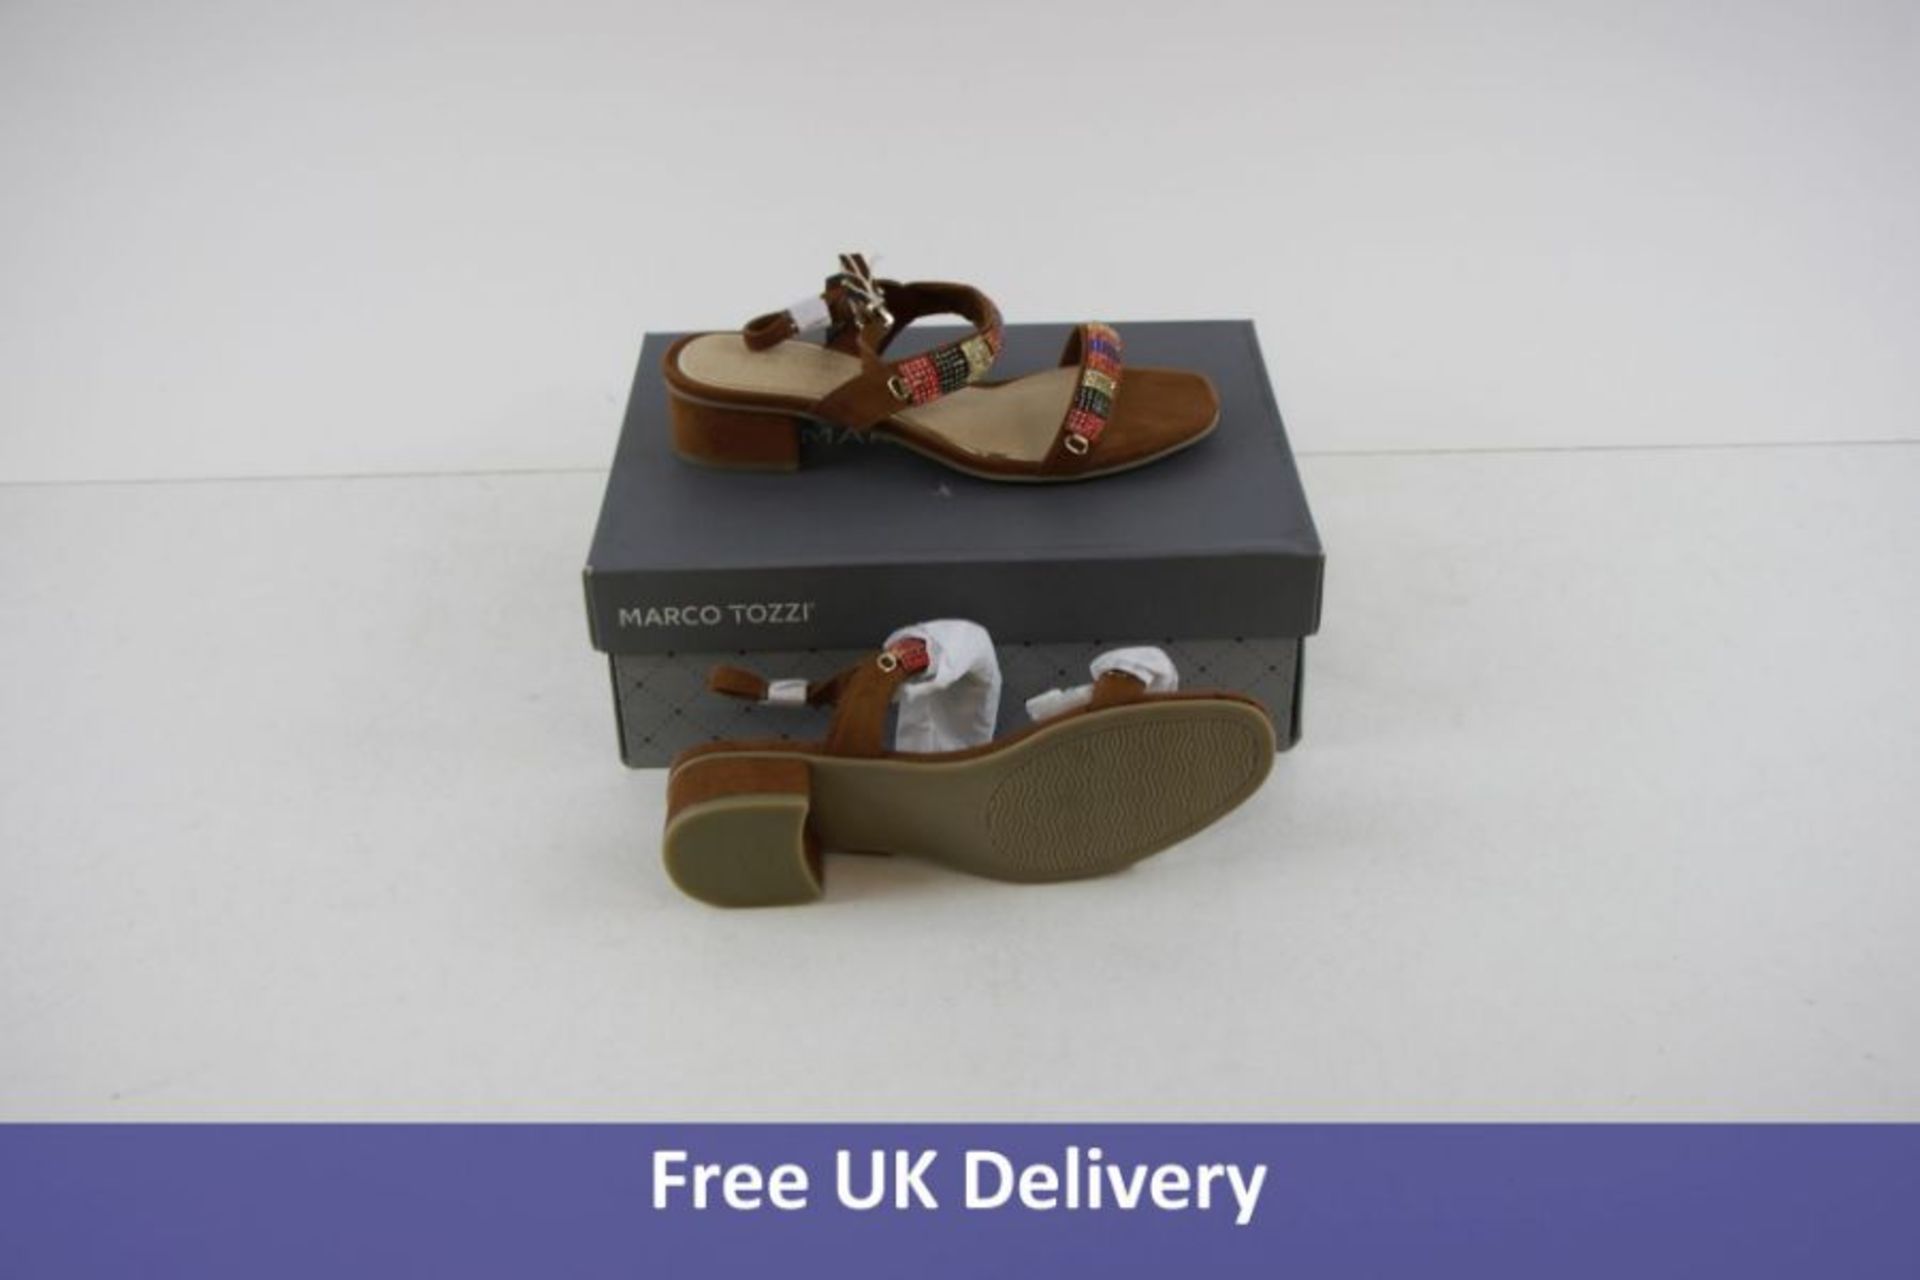 Marco tozzi Women's Heeled Sandals, Cognac, UK 4